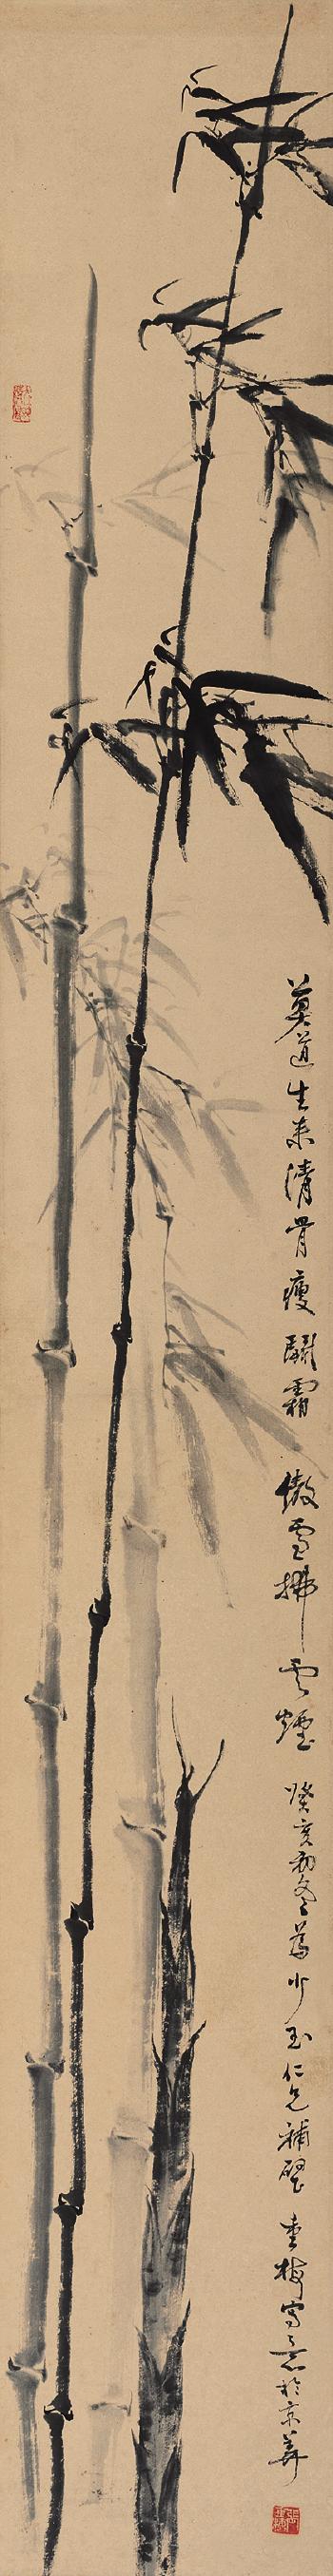 Bamboo by 
																	 Zhang Chongmei